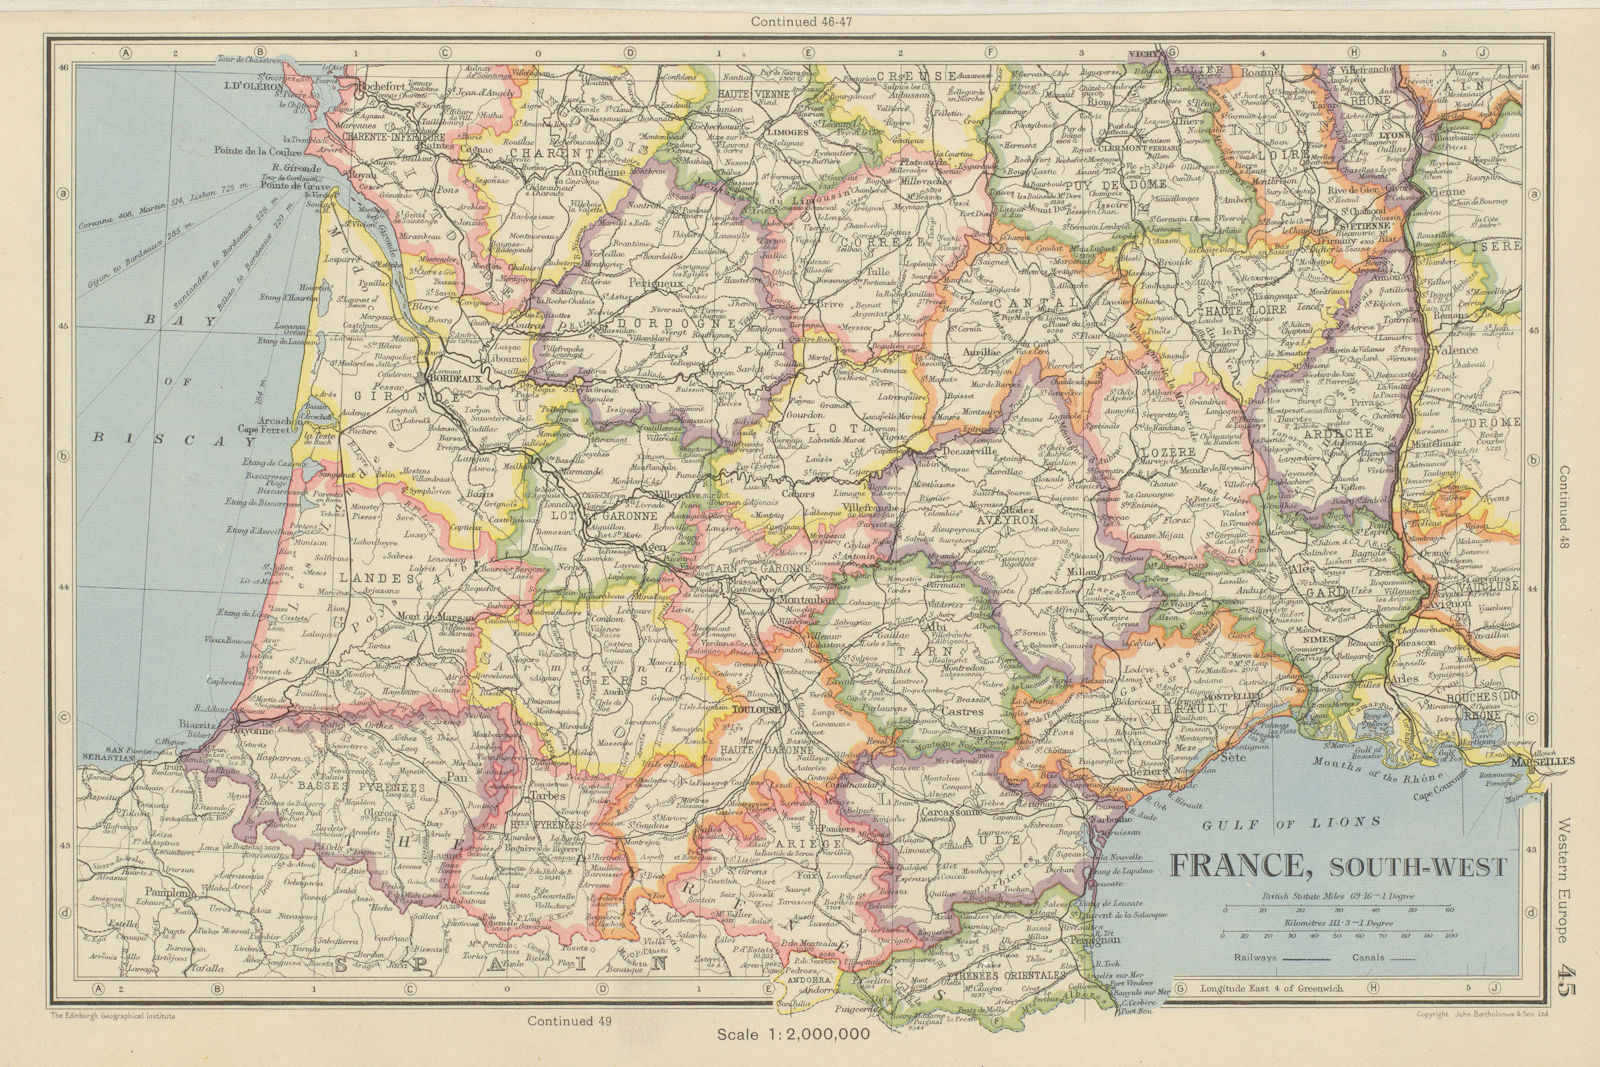 FRANCE SOUTH-WEST. Departements. BARTHOLOMEW 1947 old vintage map plan chart